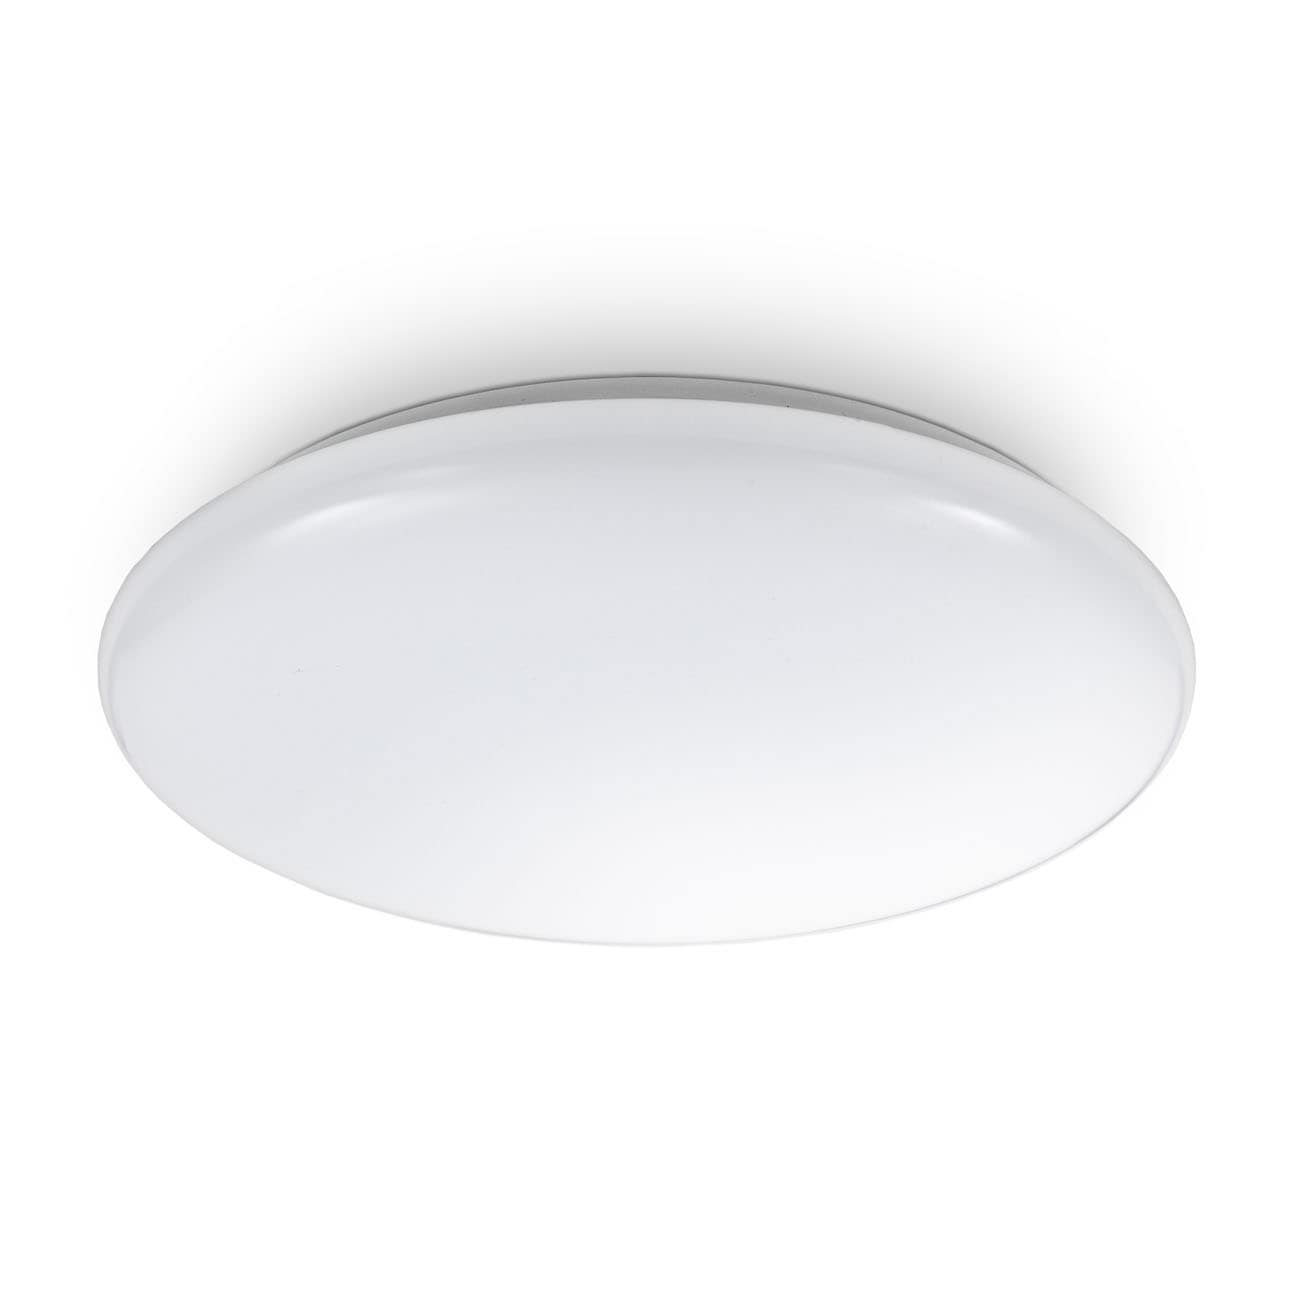 LED Deckenlampe 27,8cm - 1-flammig - Deckenleuchte flach 65mm Beleuchtung Flur Küche Bad inkl Leuchtmittel 12W 1200lm 4000K neutralweiß   | weiß - 1